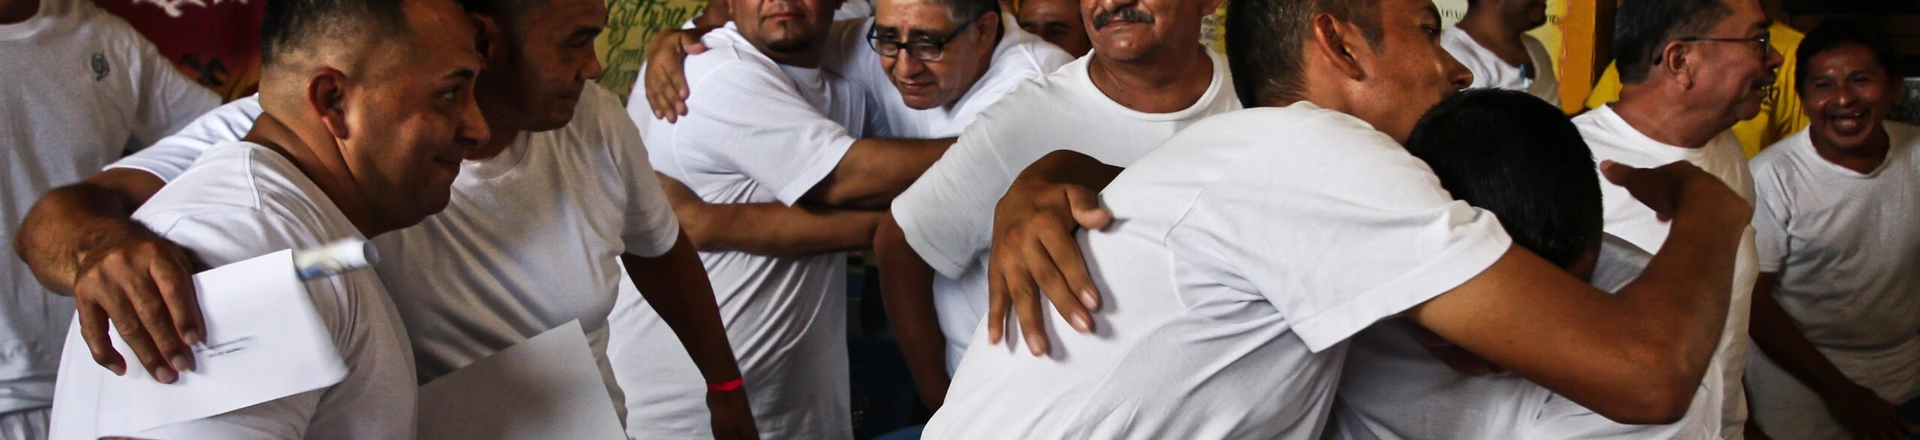 El Salvador quer parar a violência de gangues, mas o governo Trump segue apoiando ações baseadas na fracassada política “mãos de ferro”